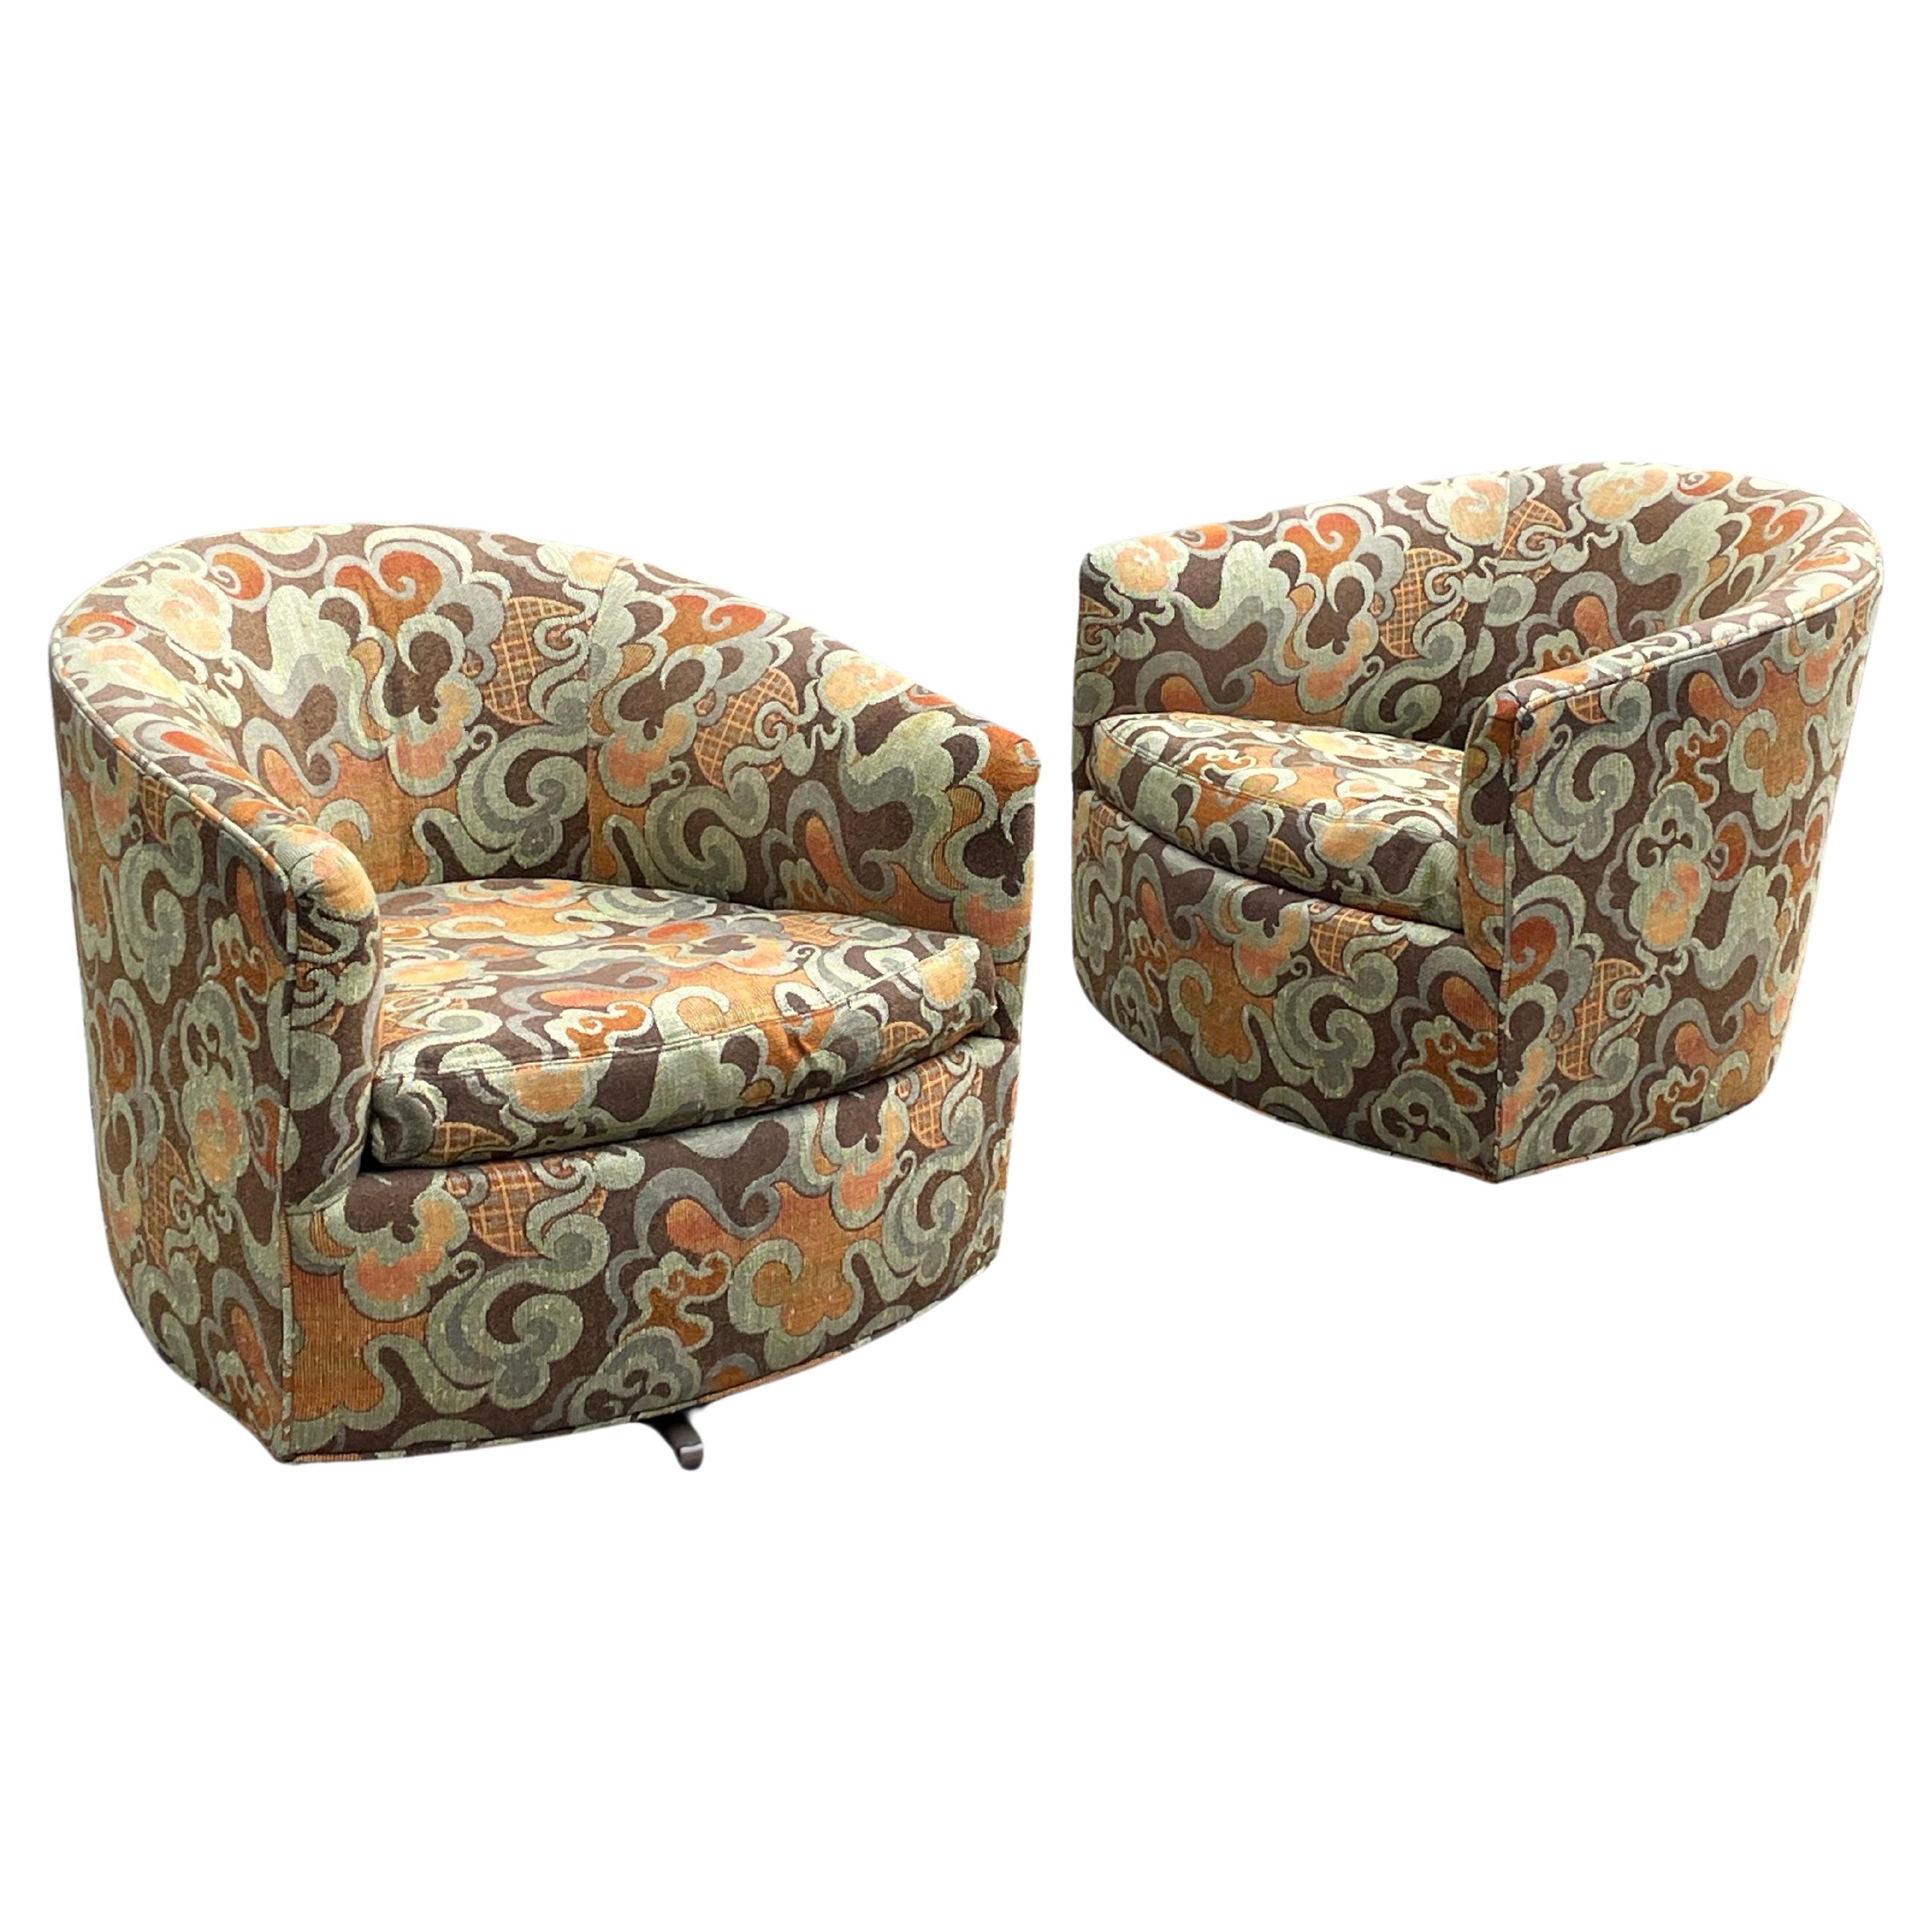 Une superbe paire de chaises pivotantes vintage par Milo By dans un tissu original des années 60 très cool.
 
Produit pour Flair. L'étiquette d'origine est intacte.

Très bon état.

Le prix correspond à la paire.

DIMENSIONS : 25,5